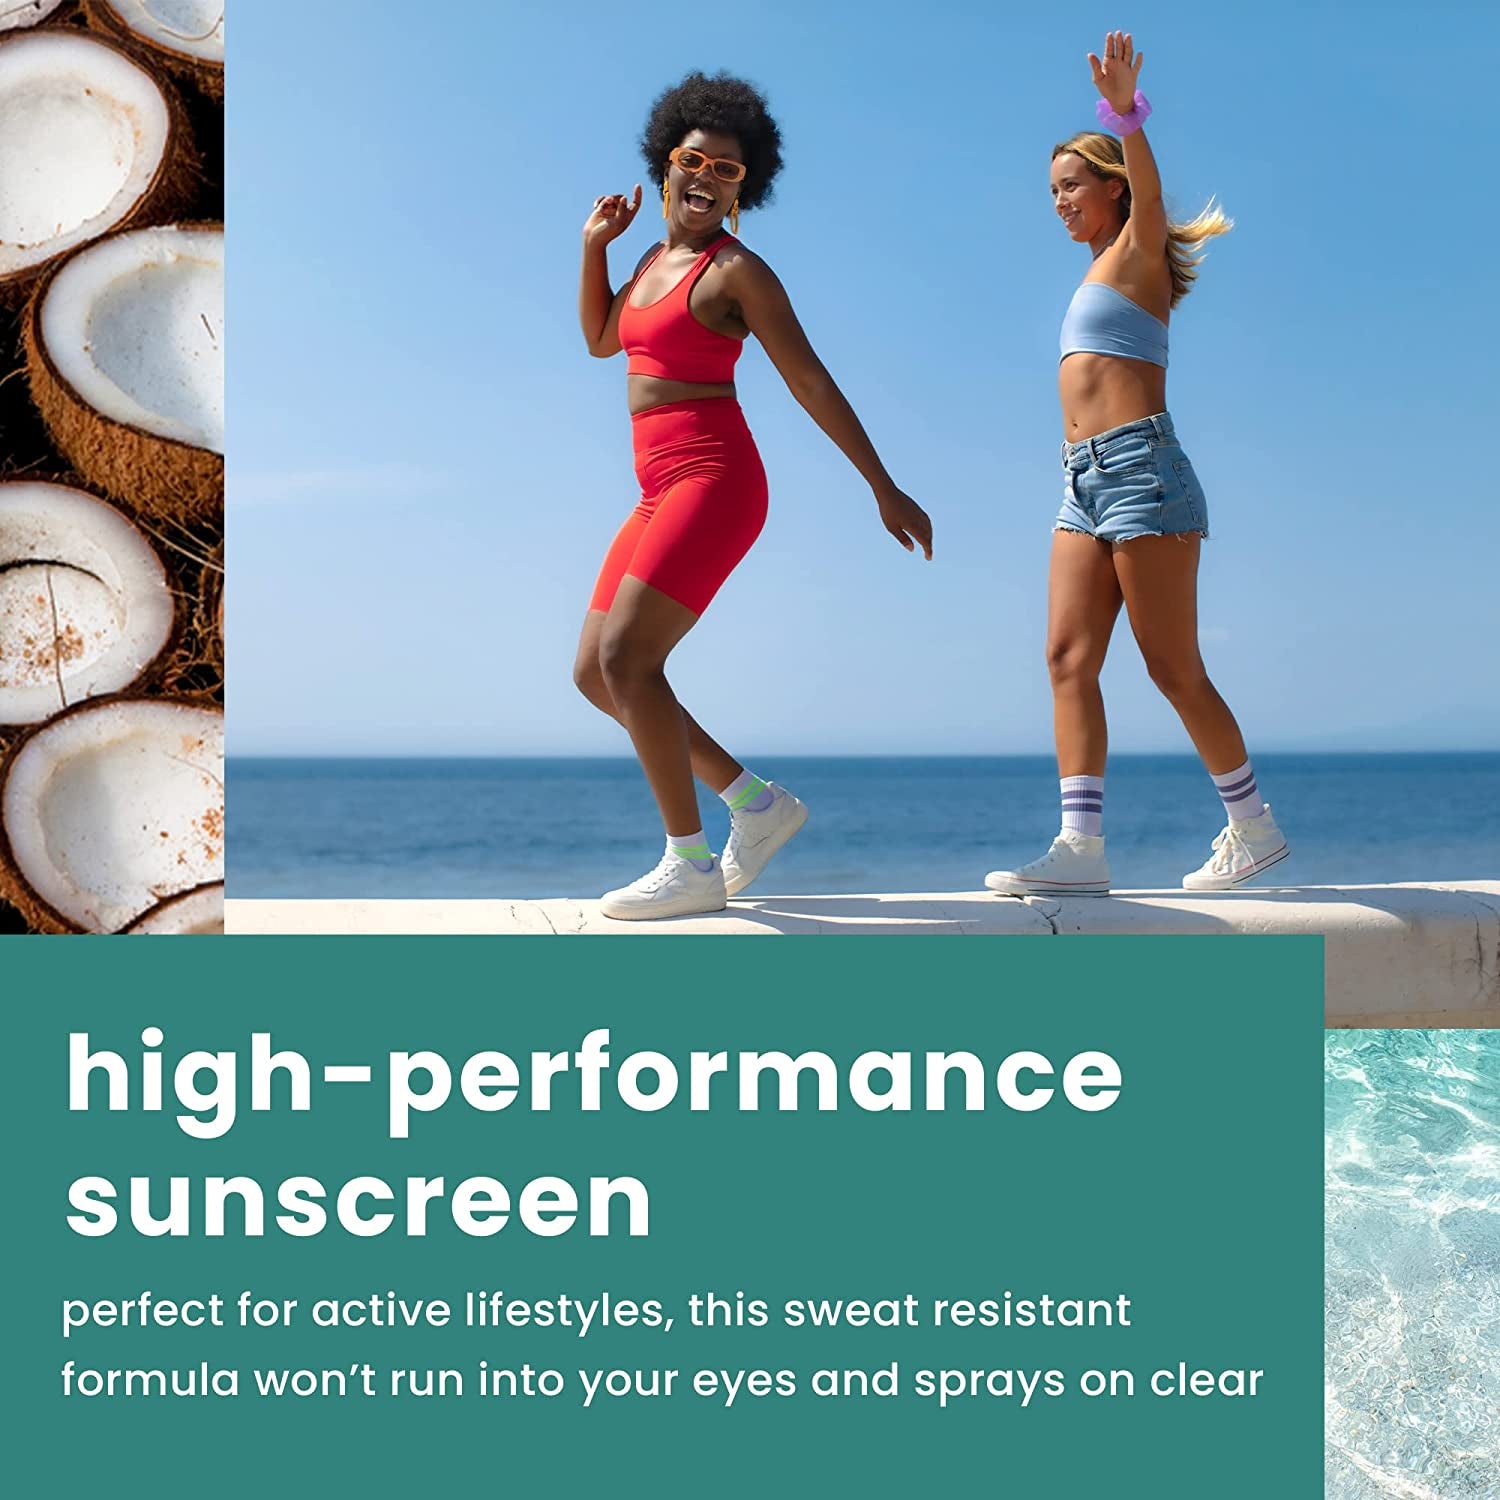 "2-Pack Hawaiian Tropic Everyday Active SPF 50 Sunscreen Spray, 6oz Each"